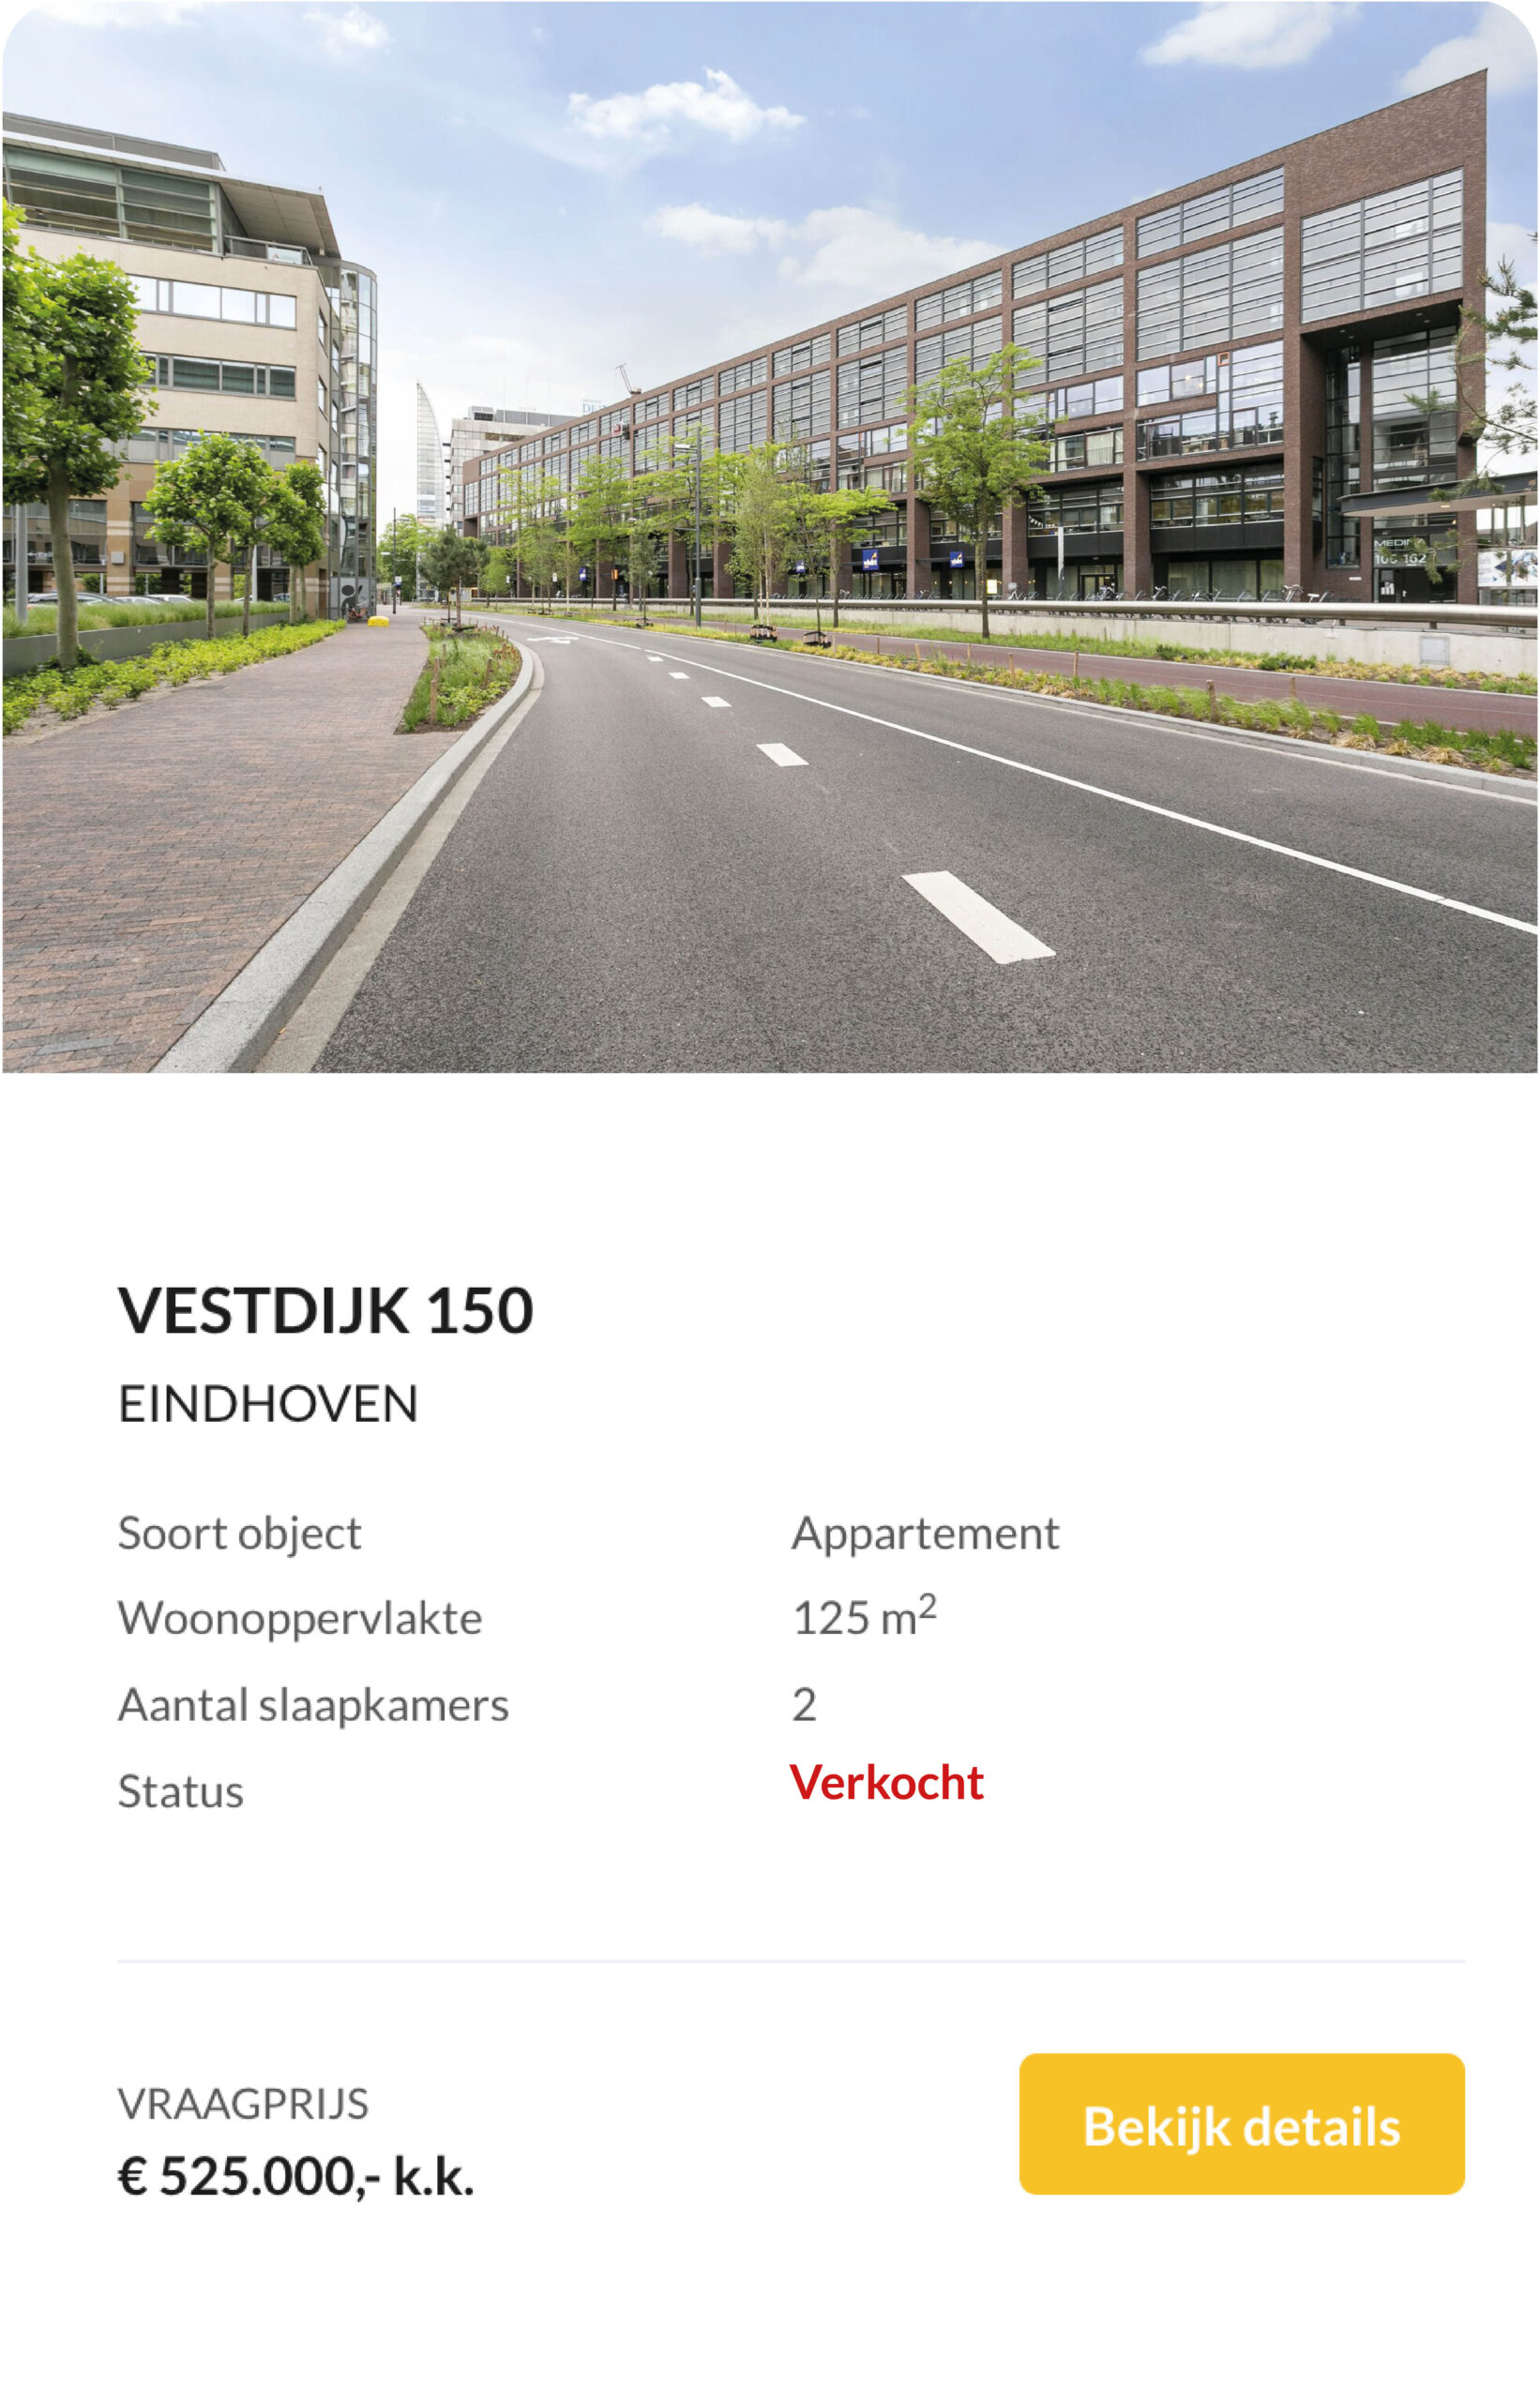 Eindhoven verkocht